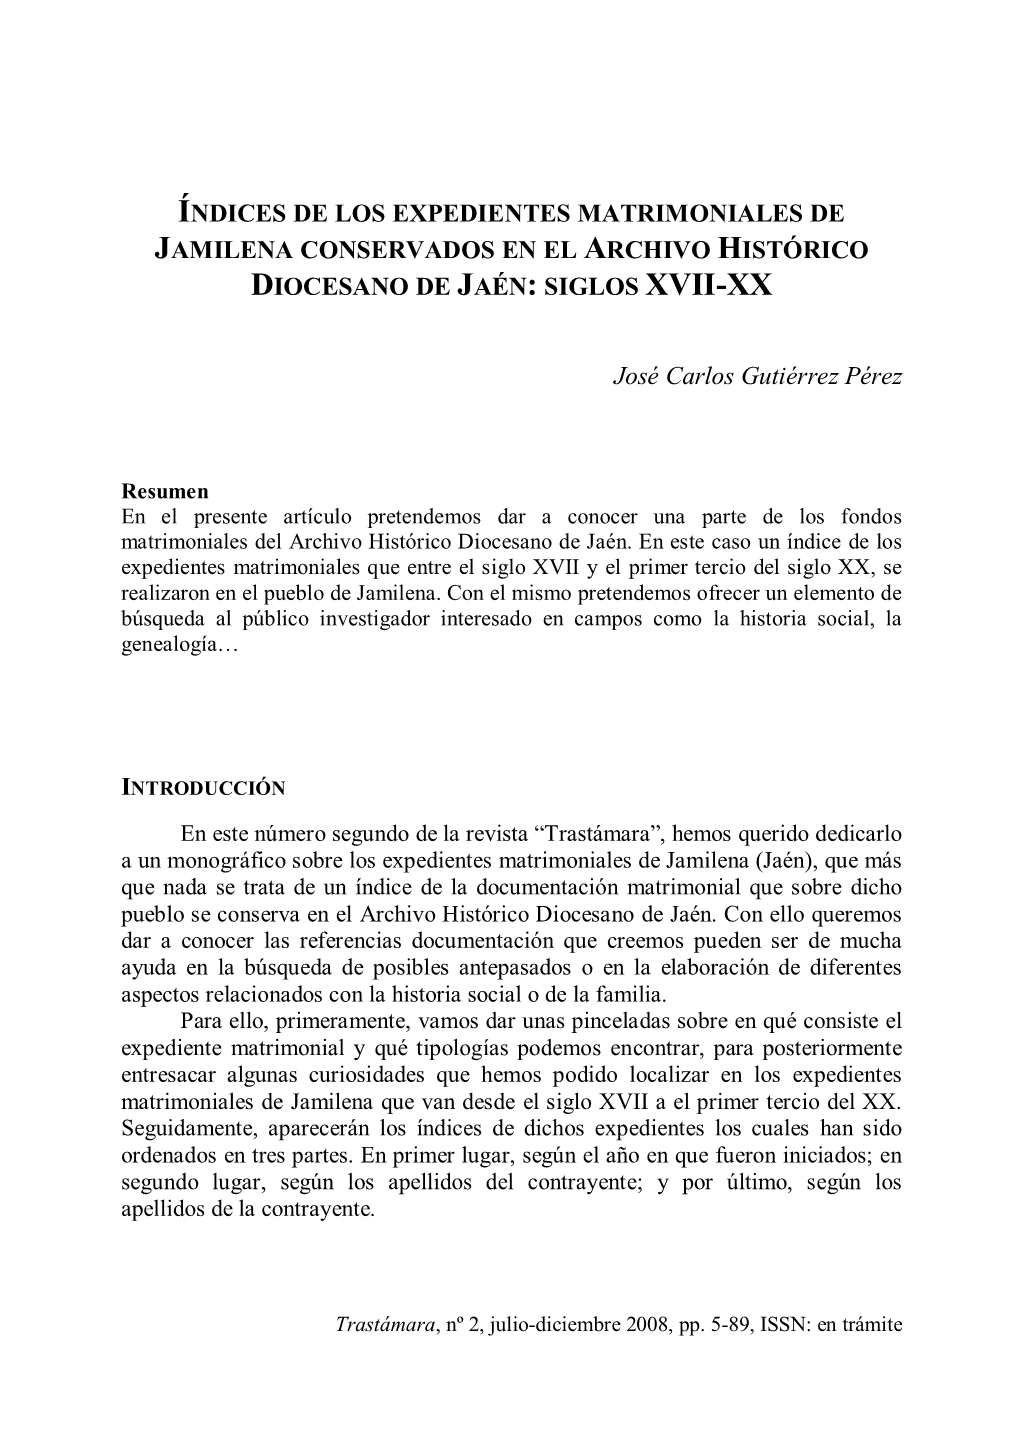 Índices De Los Expedientes Matrimoniales De Jamilena Conservados En El Archivo Histórico Diocesano De Jaén: Siglos Xvii-Xx